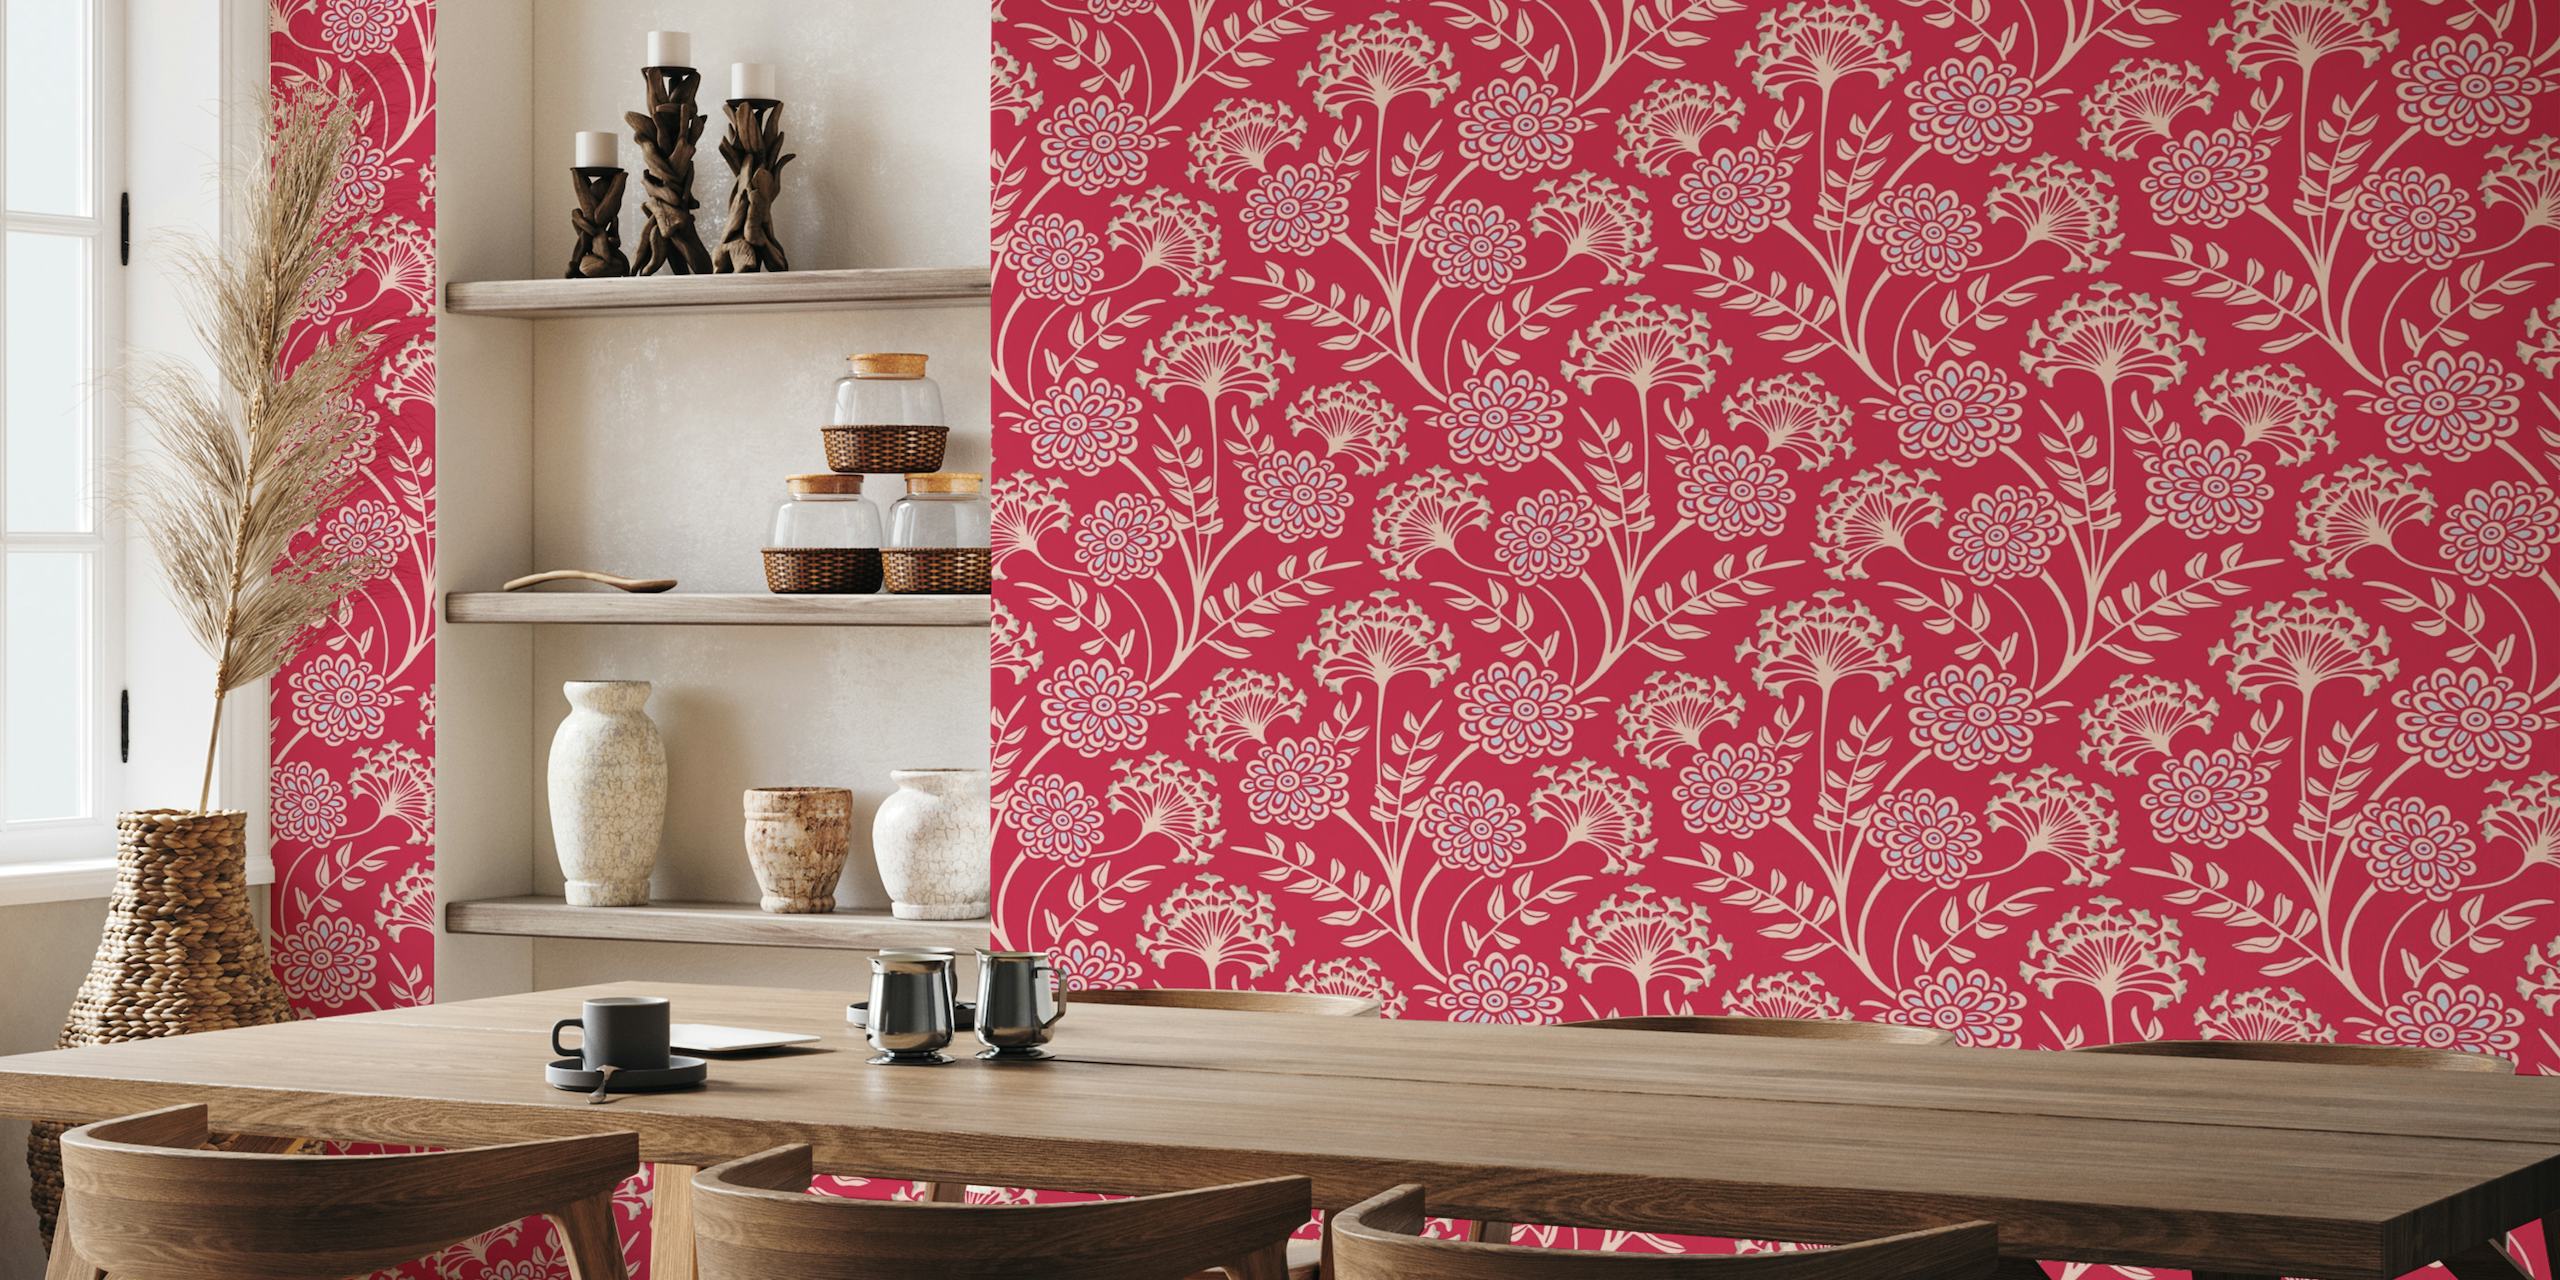 DANUBE Cottage Floral - Magenta Red - Large wallpaper